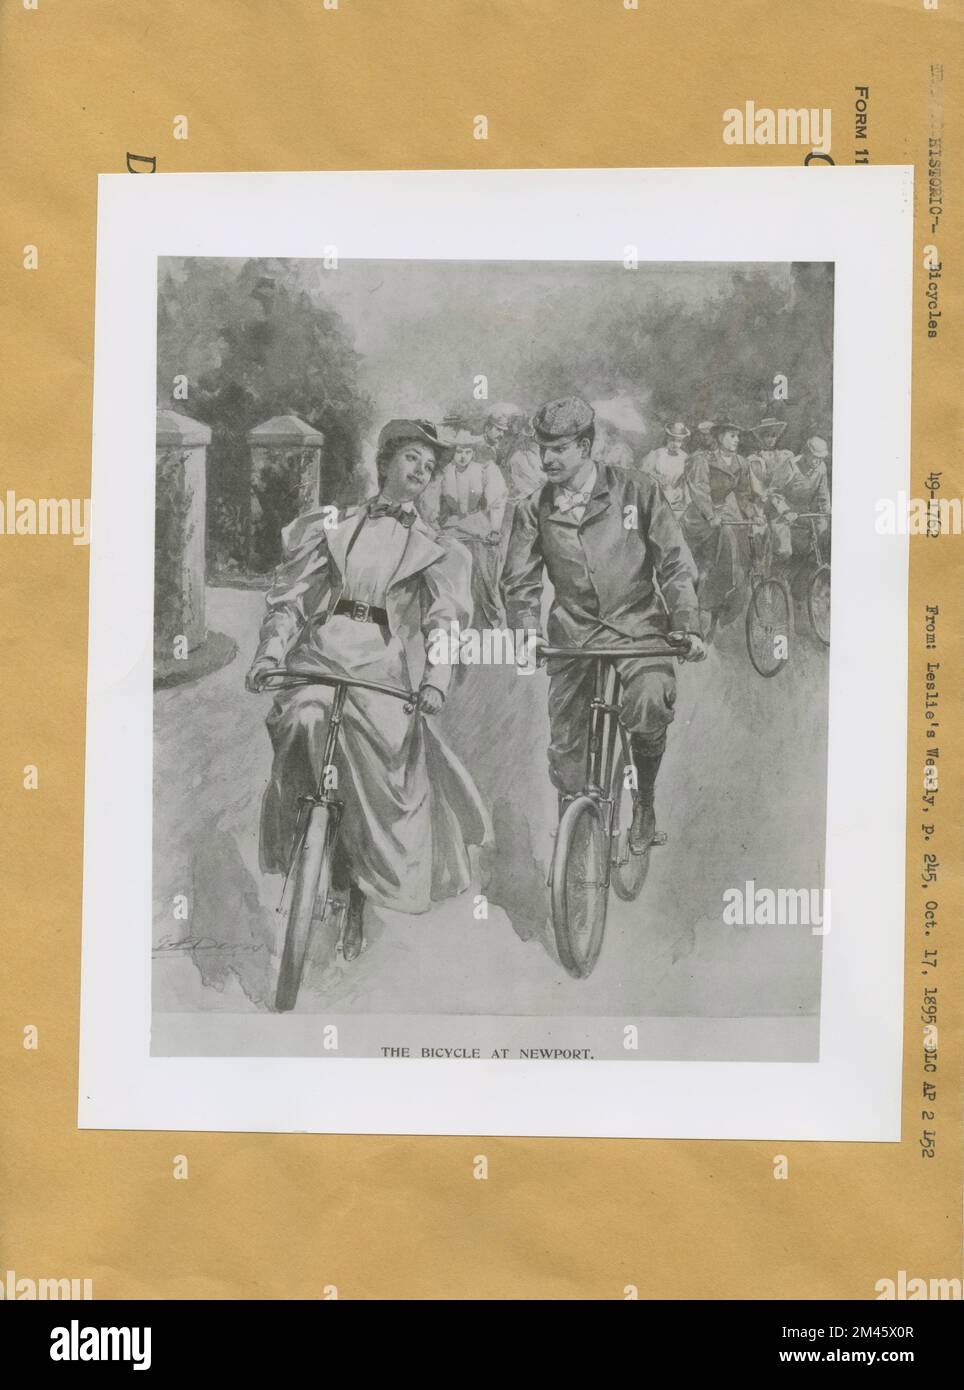 Le vélo à Newport. Légende originale: THE BICYCLE AT NEWPORT. Leslie's Weekly, p. 245, 17 octobre 1895. Banque D'Images